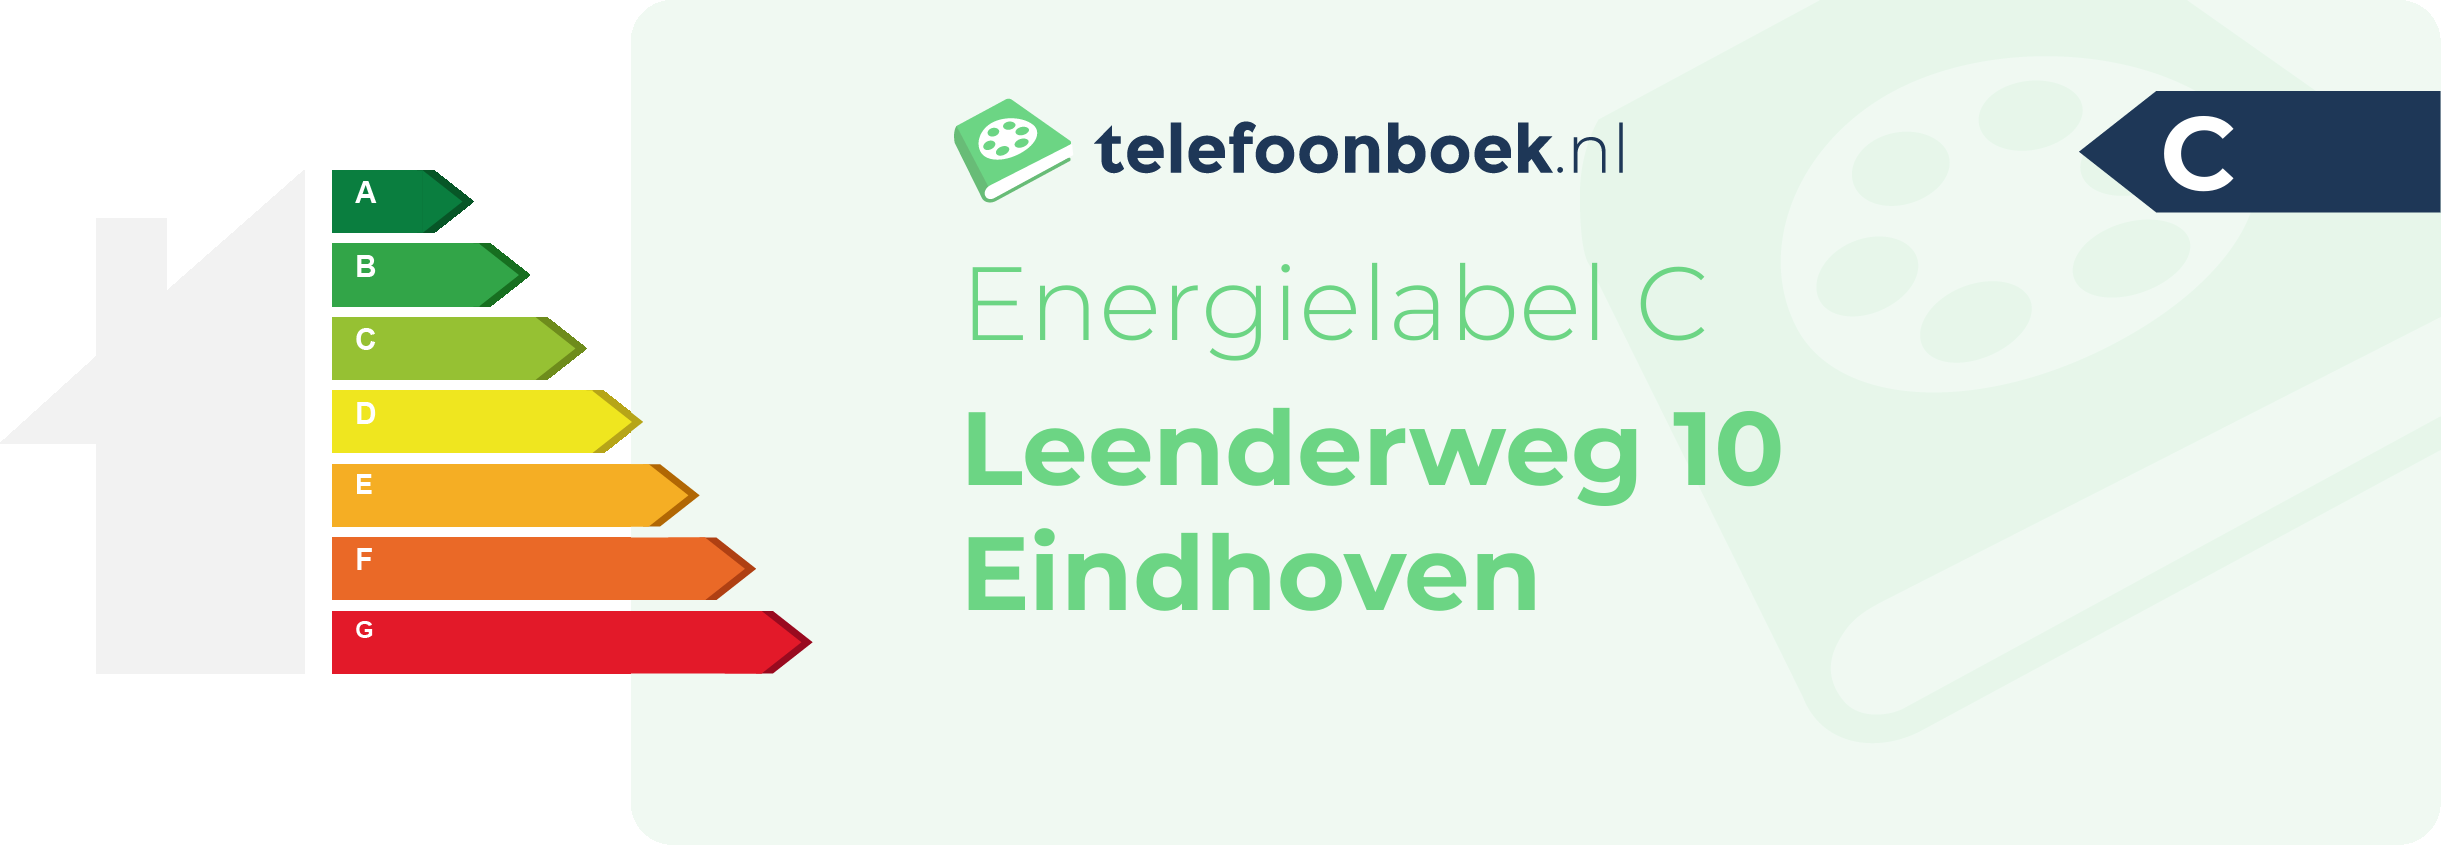 Energielabel Leenderweg 10 Eindhoven